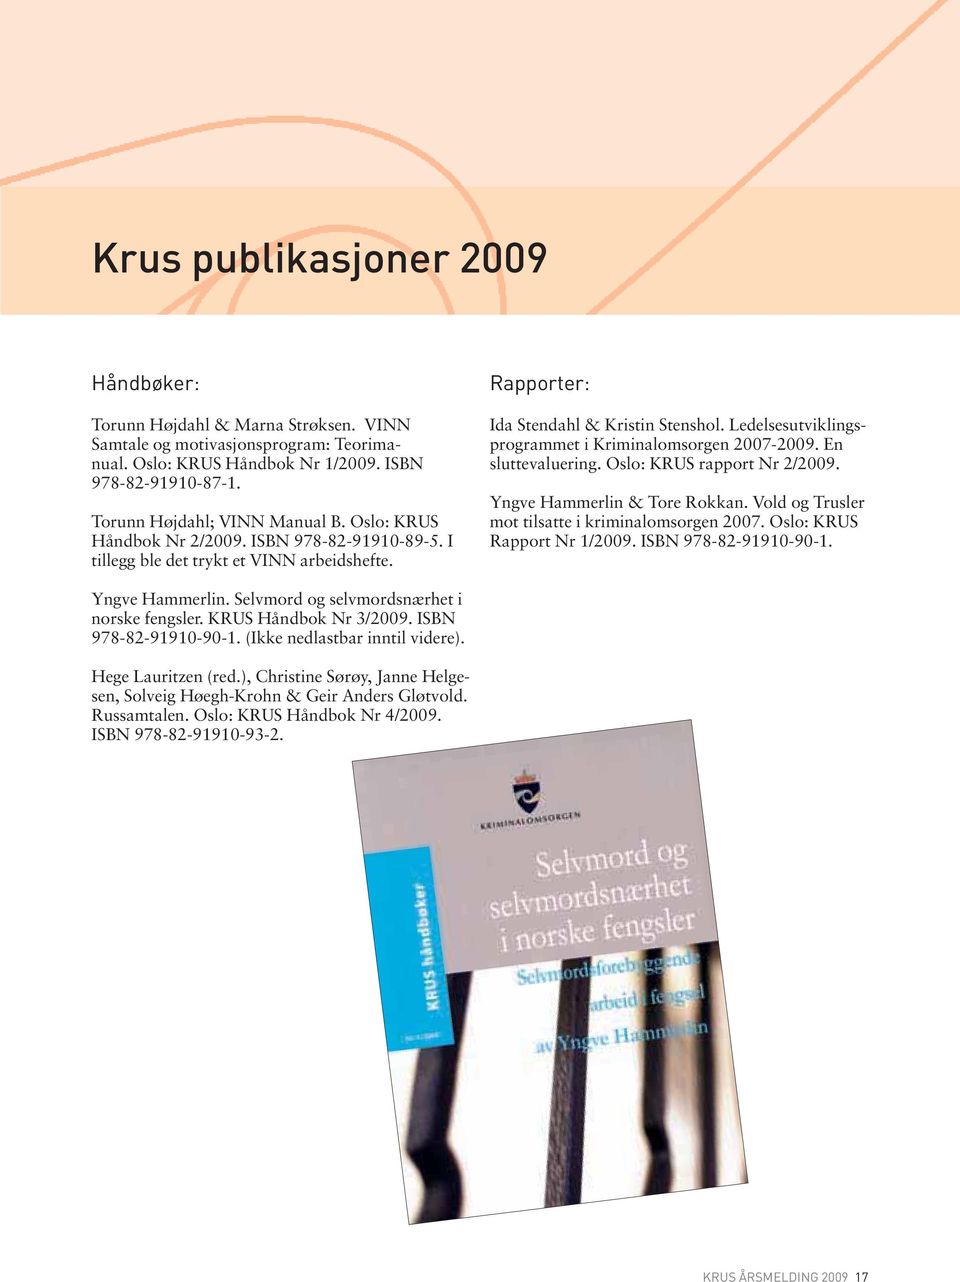 En sluttevaluering. Oslo: KRUS rapport Nr 2/2009. Yngve Hammerlin & Tore Rokkan. Vold og Trusler mot tilsatte i kriminalomsorgen 2007. Oslo: KRUS Rapport Nr 1/2009. ISBN 978-82-91910-90-1.